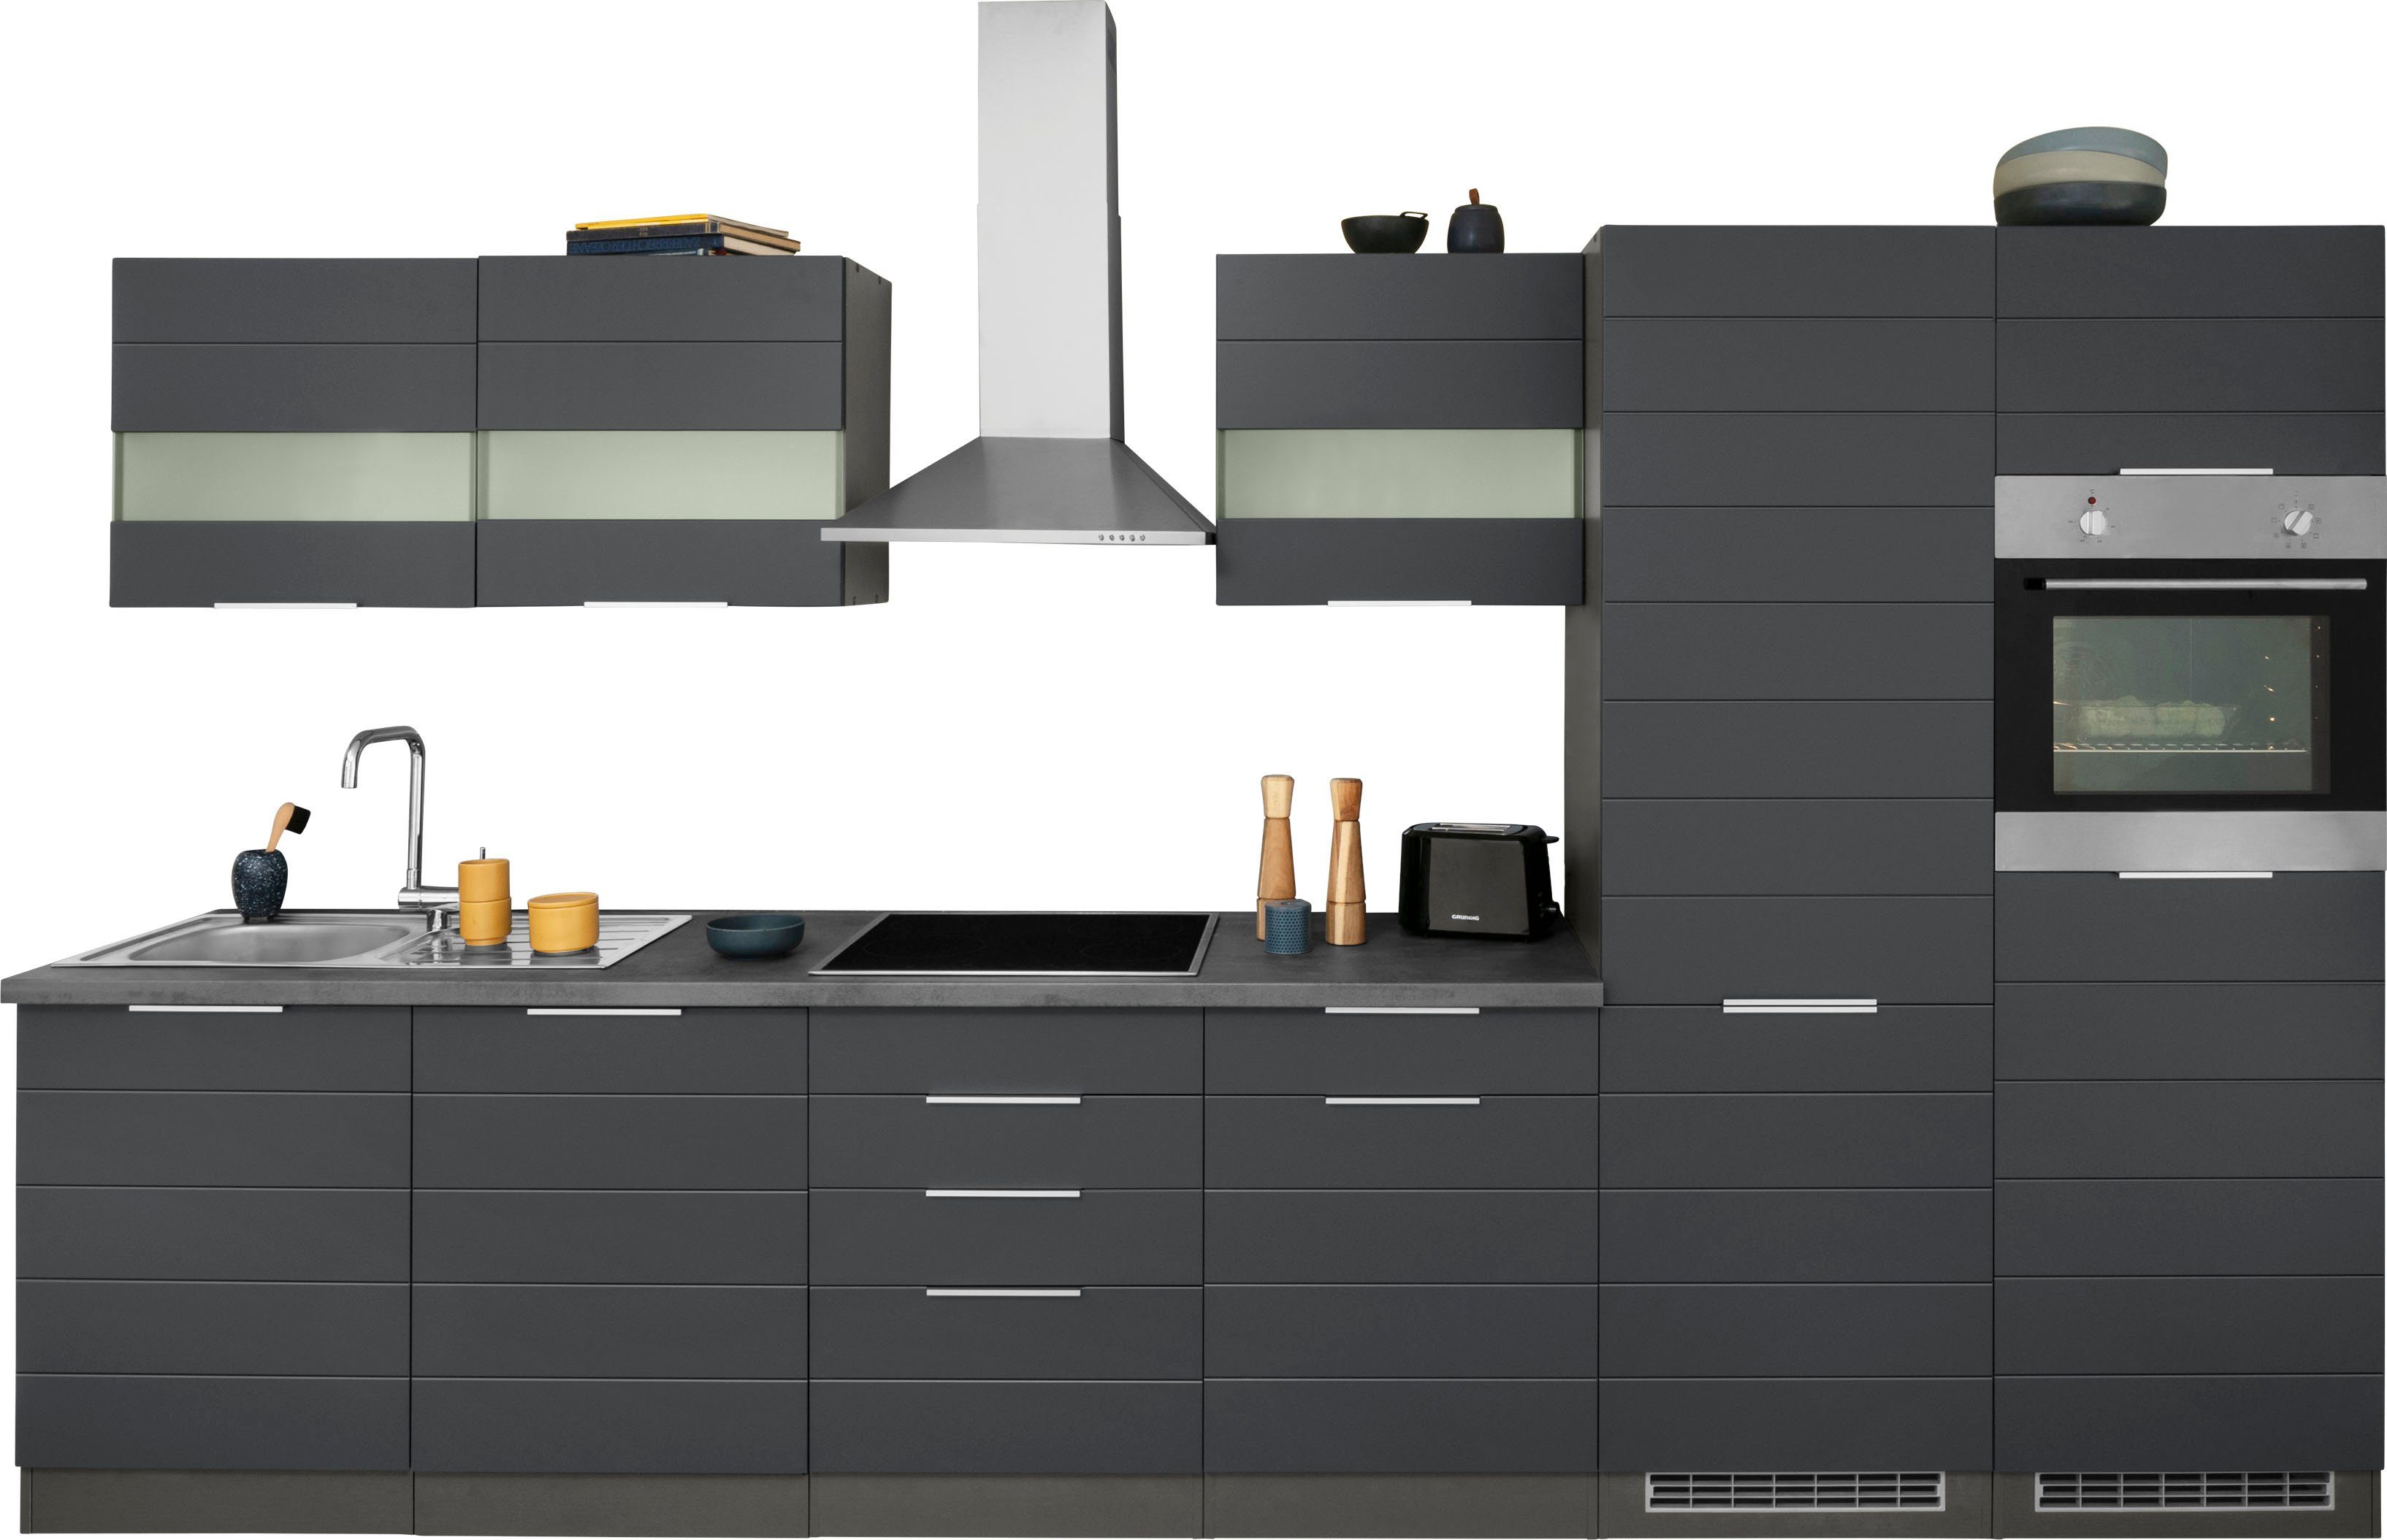 HELD MÖBEL Küche Luhe, 360 cm breit, wahlweise mit oder ohne E-Geräten, gefräste MDF-Fronten grau